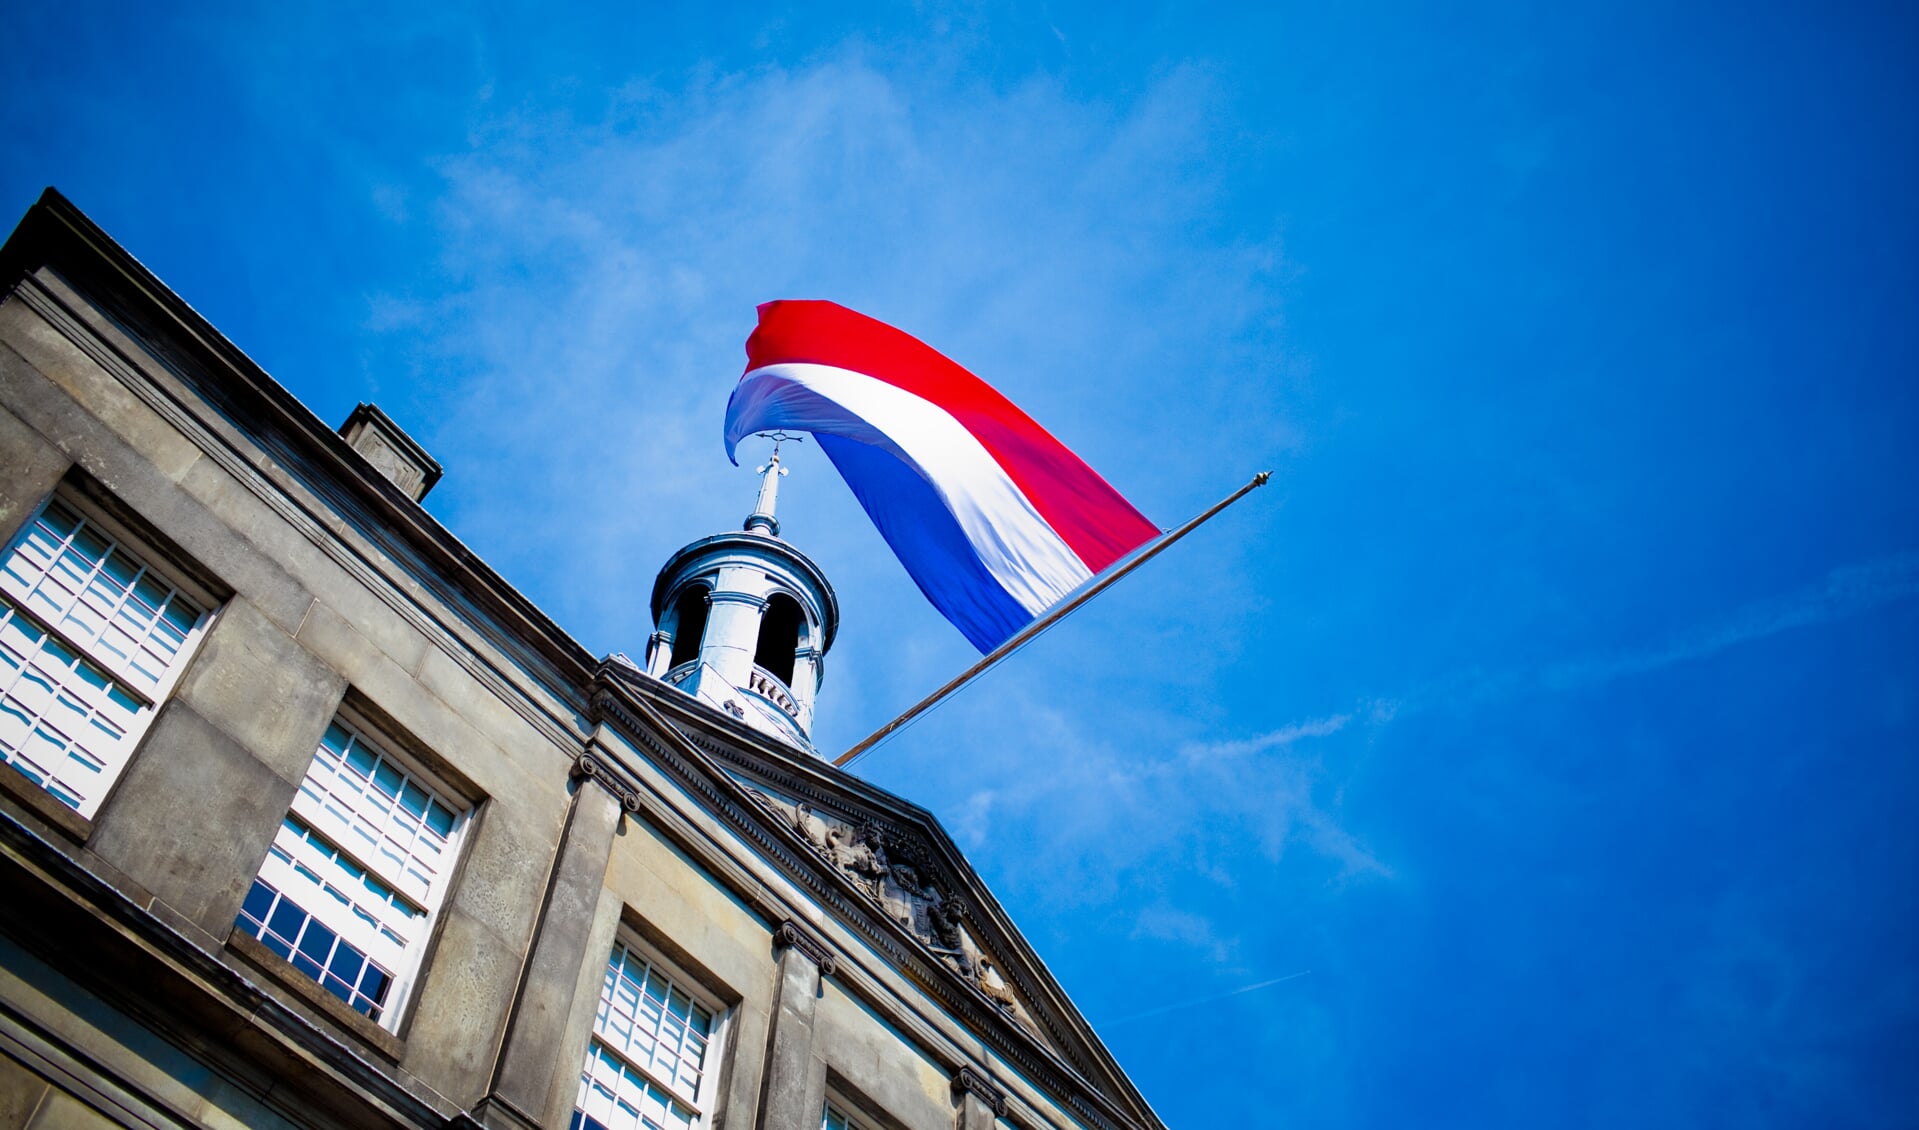 De Nederlandse vlag op het stadhuis hangt halfstok. .